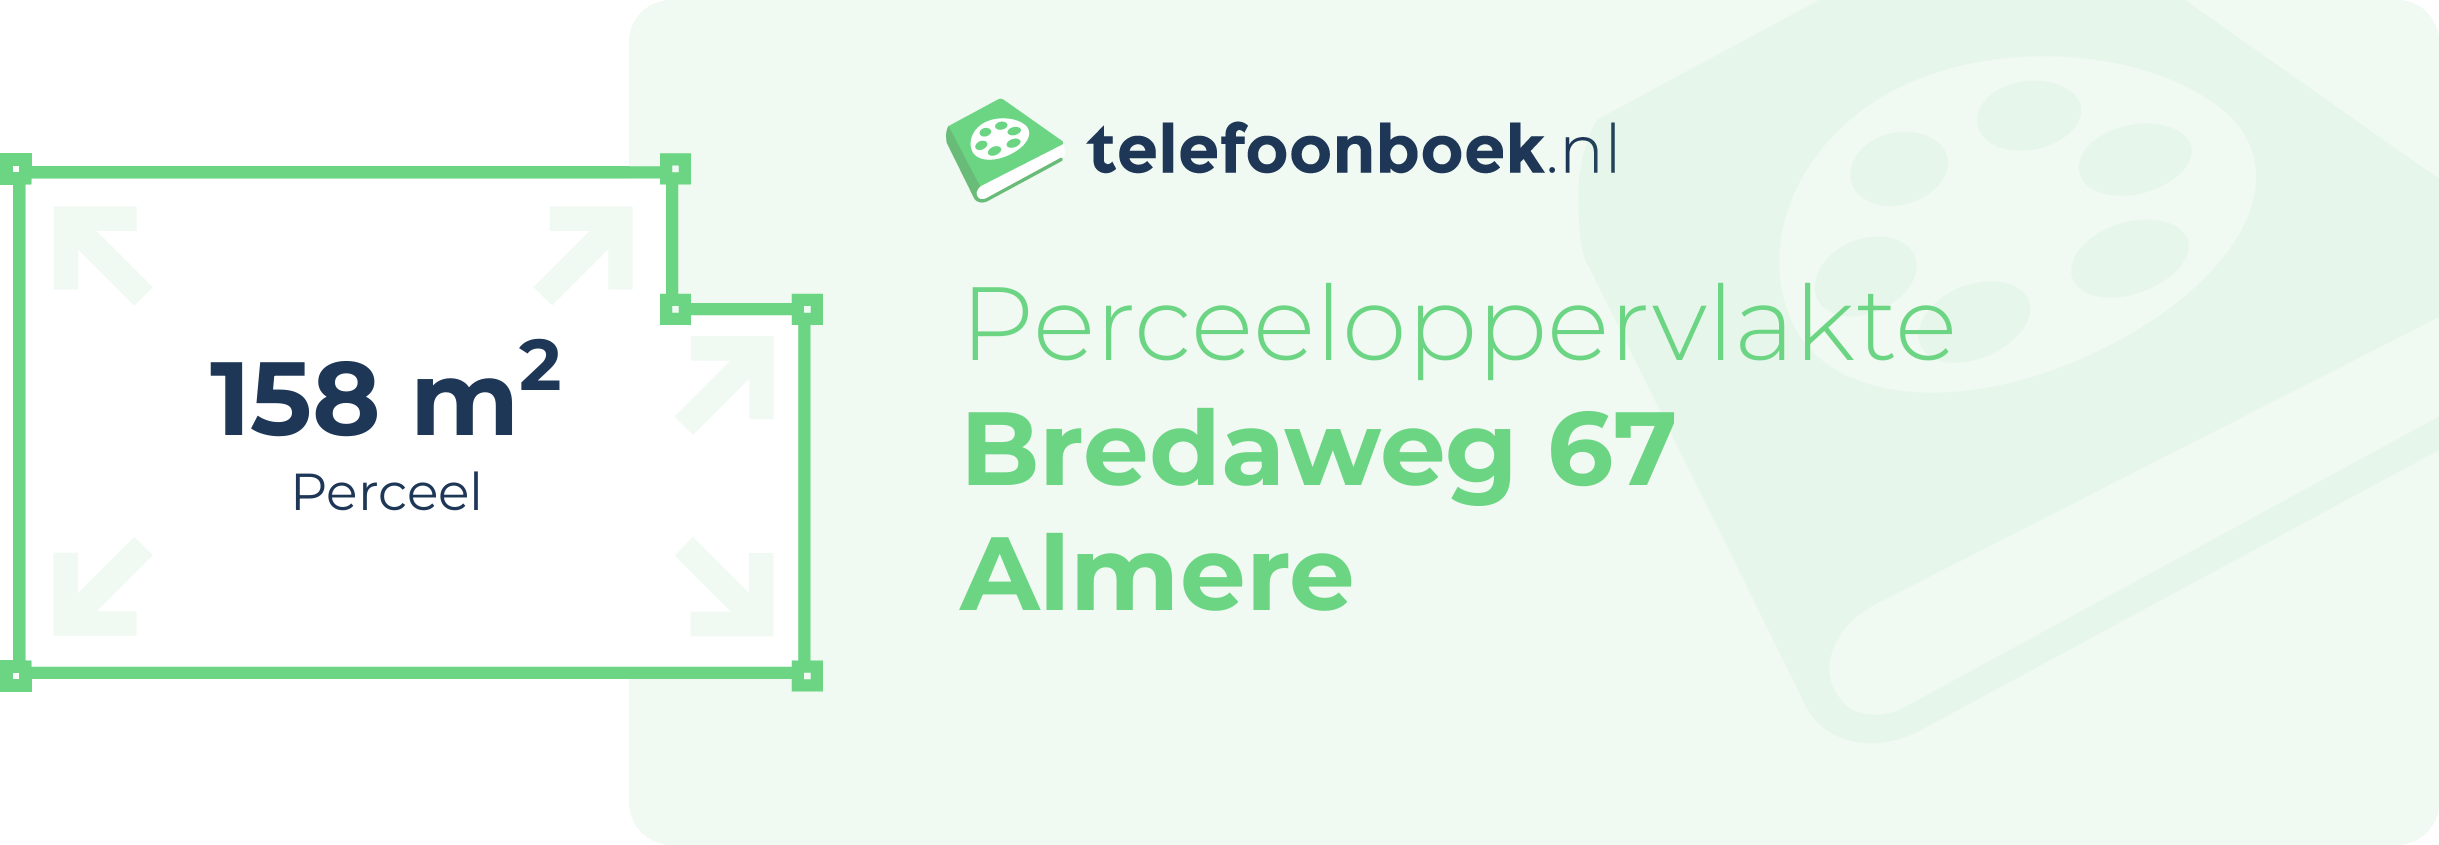 Perceeloppervlakte Bredaweg 67 Almere